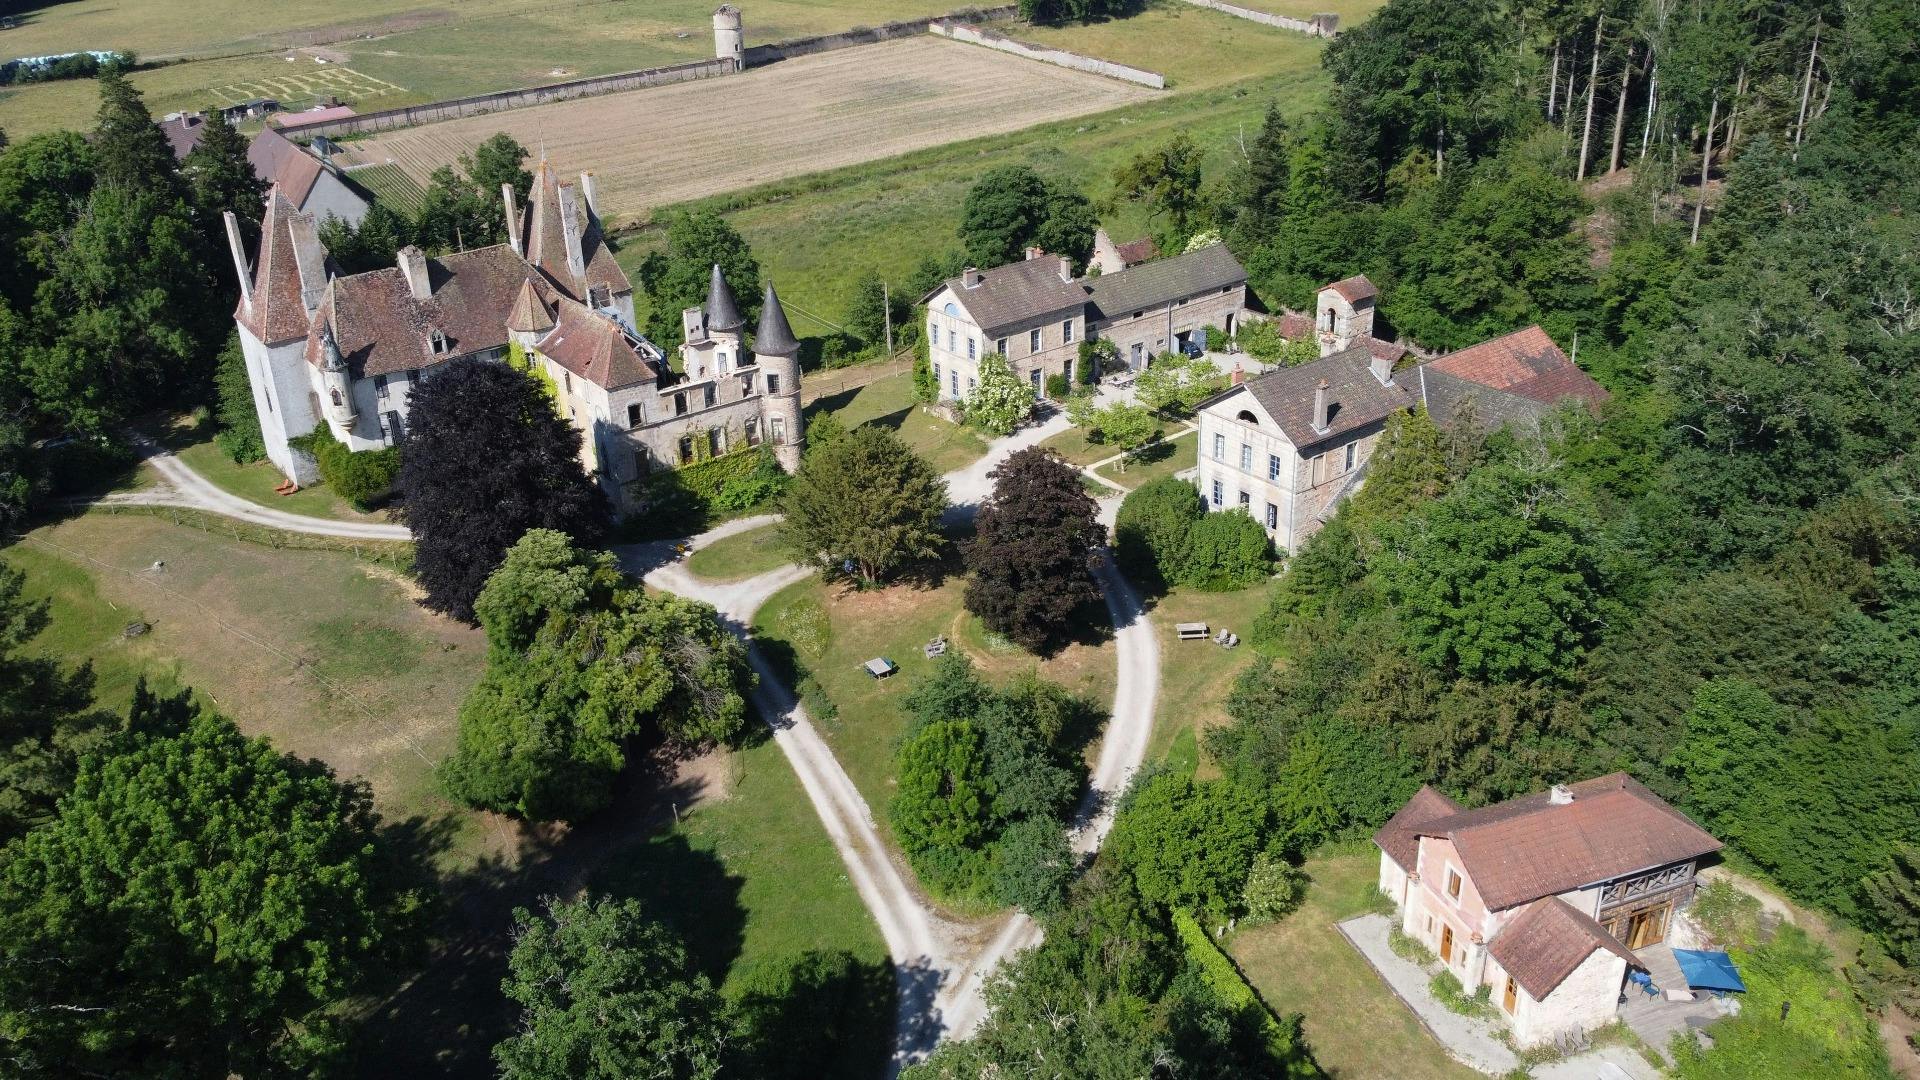 Domaine Chateau de Digoine